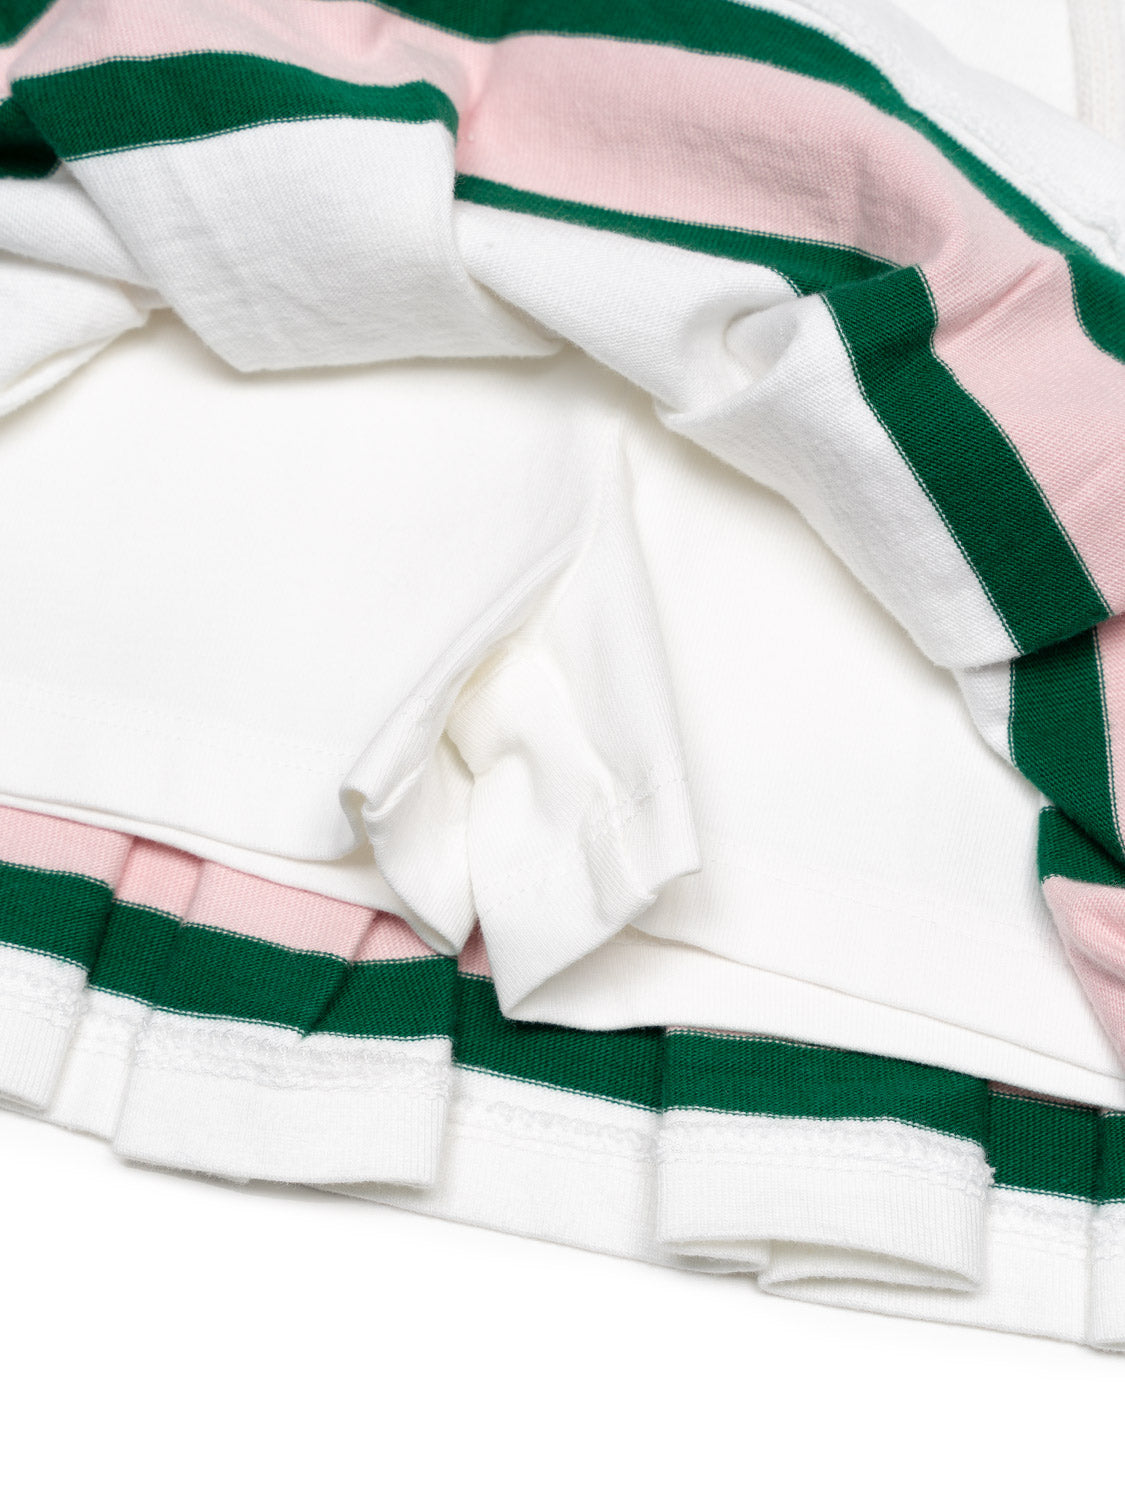 Tennisrock mit Streifen-Details - Weiß